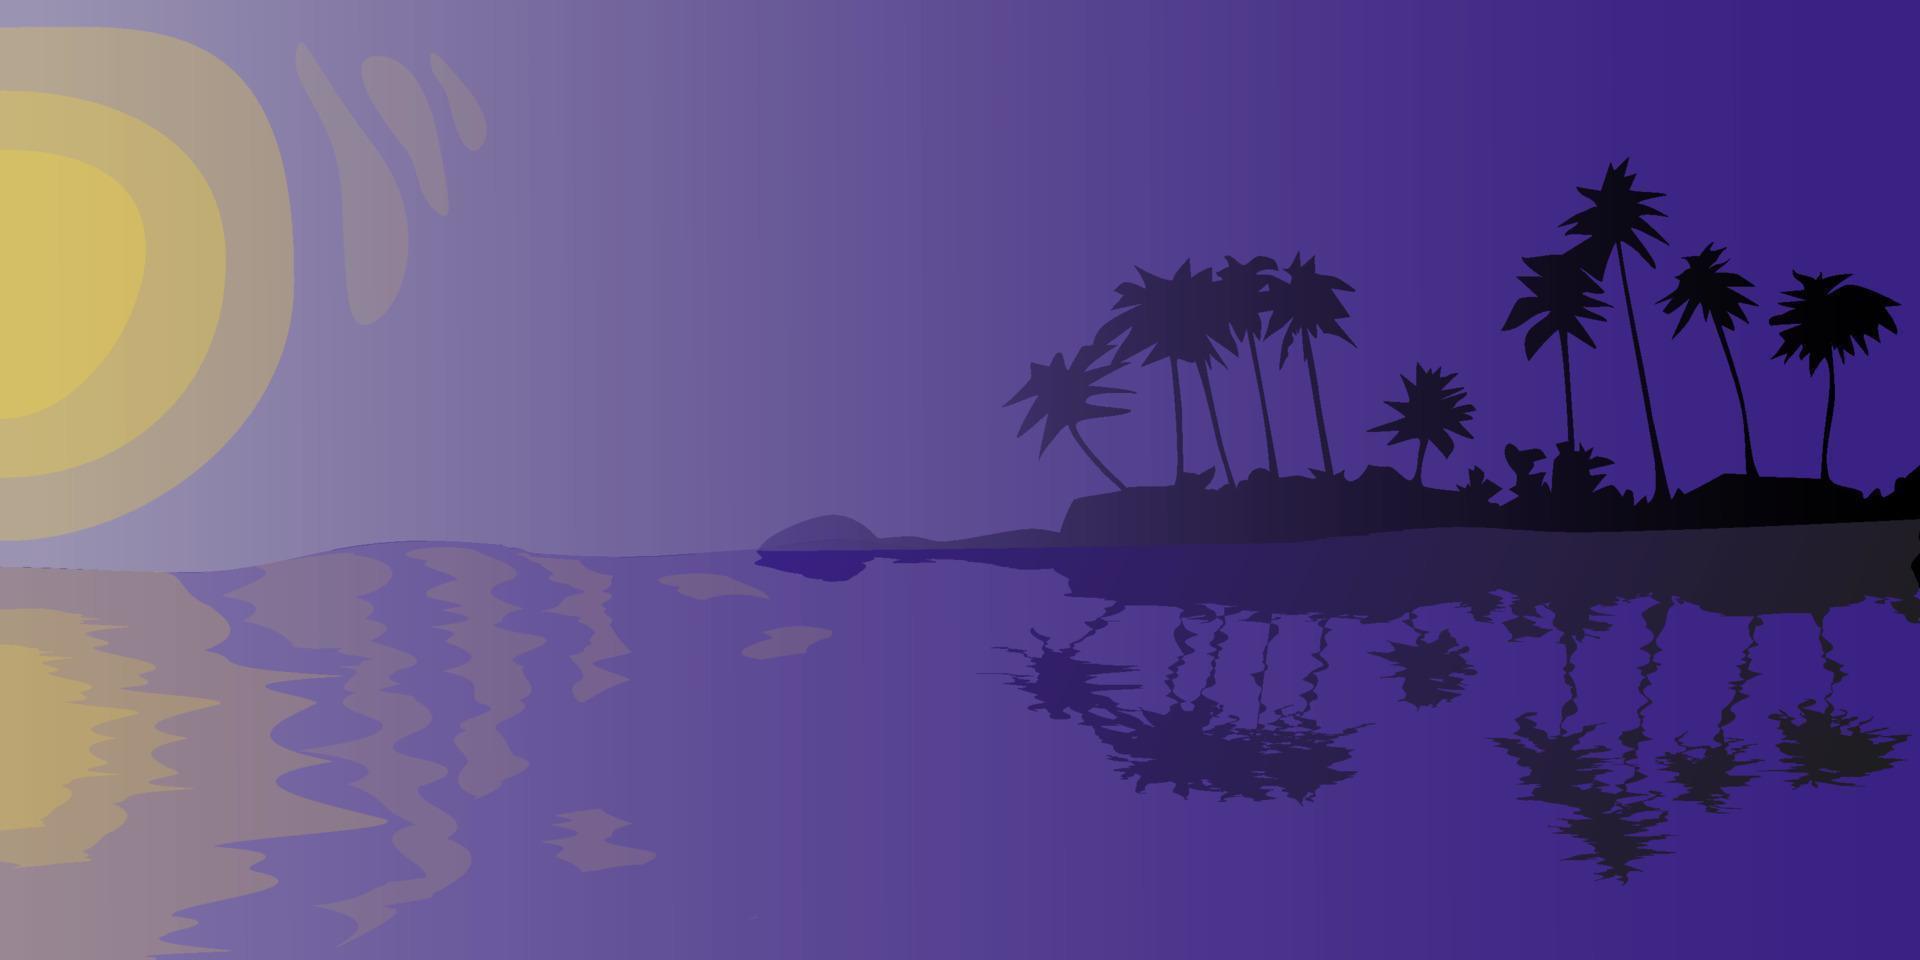 puesta de sol o amanecer en la isla tropical fondo abstracto de siluetas de palmeras nocturnas a orillas del mar con ilustración vectorial de reflexión vector